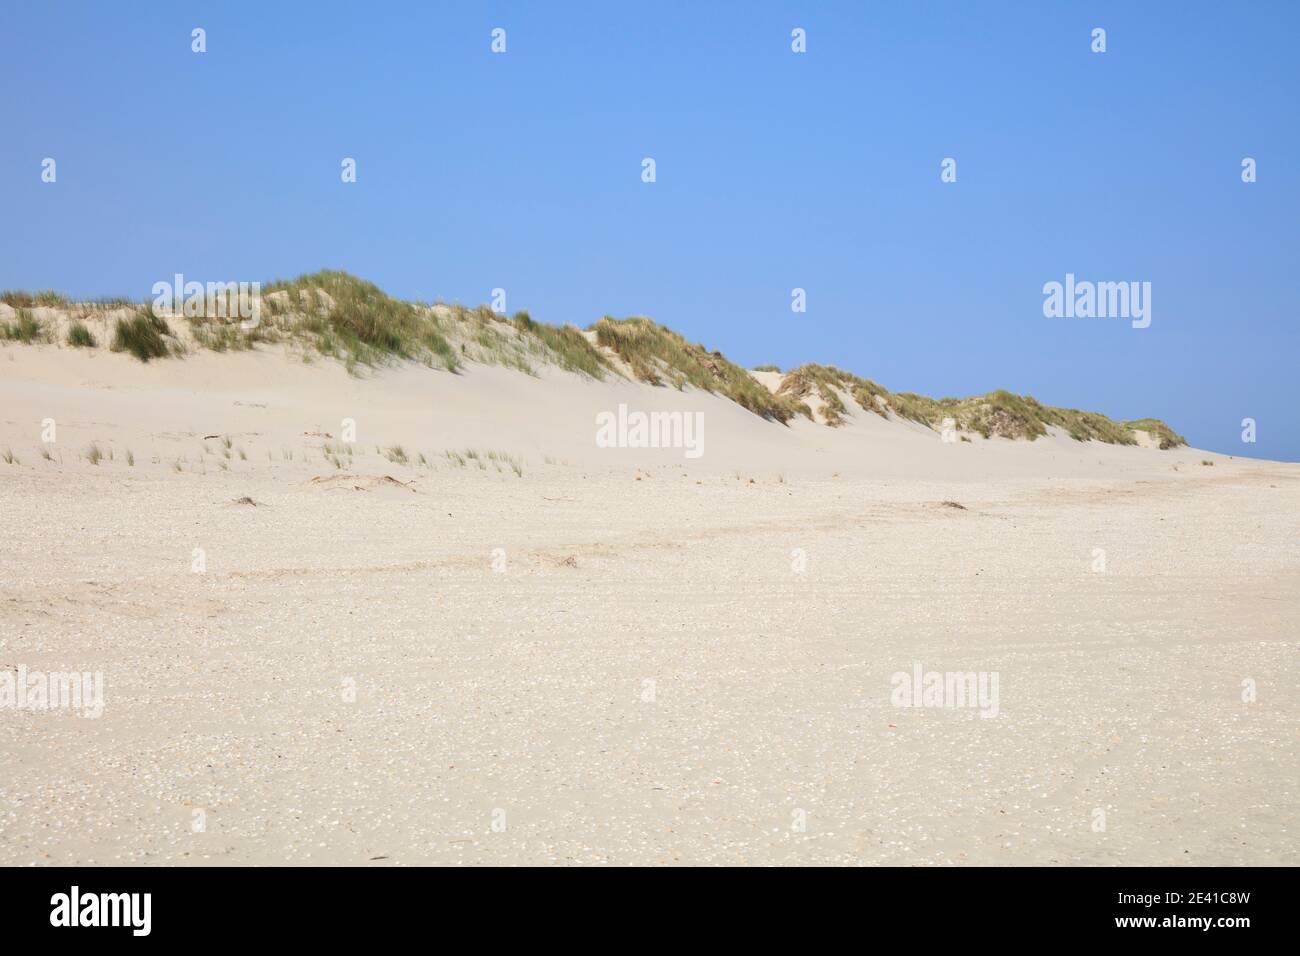 Dune landscape, Borkum, East Frisian Island, East frisia, Lower Saxony, Germany, Europe Stock Photo